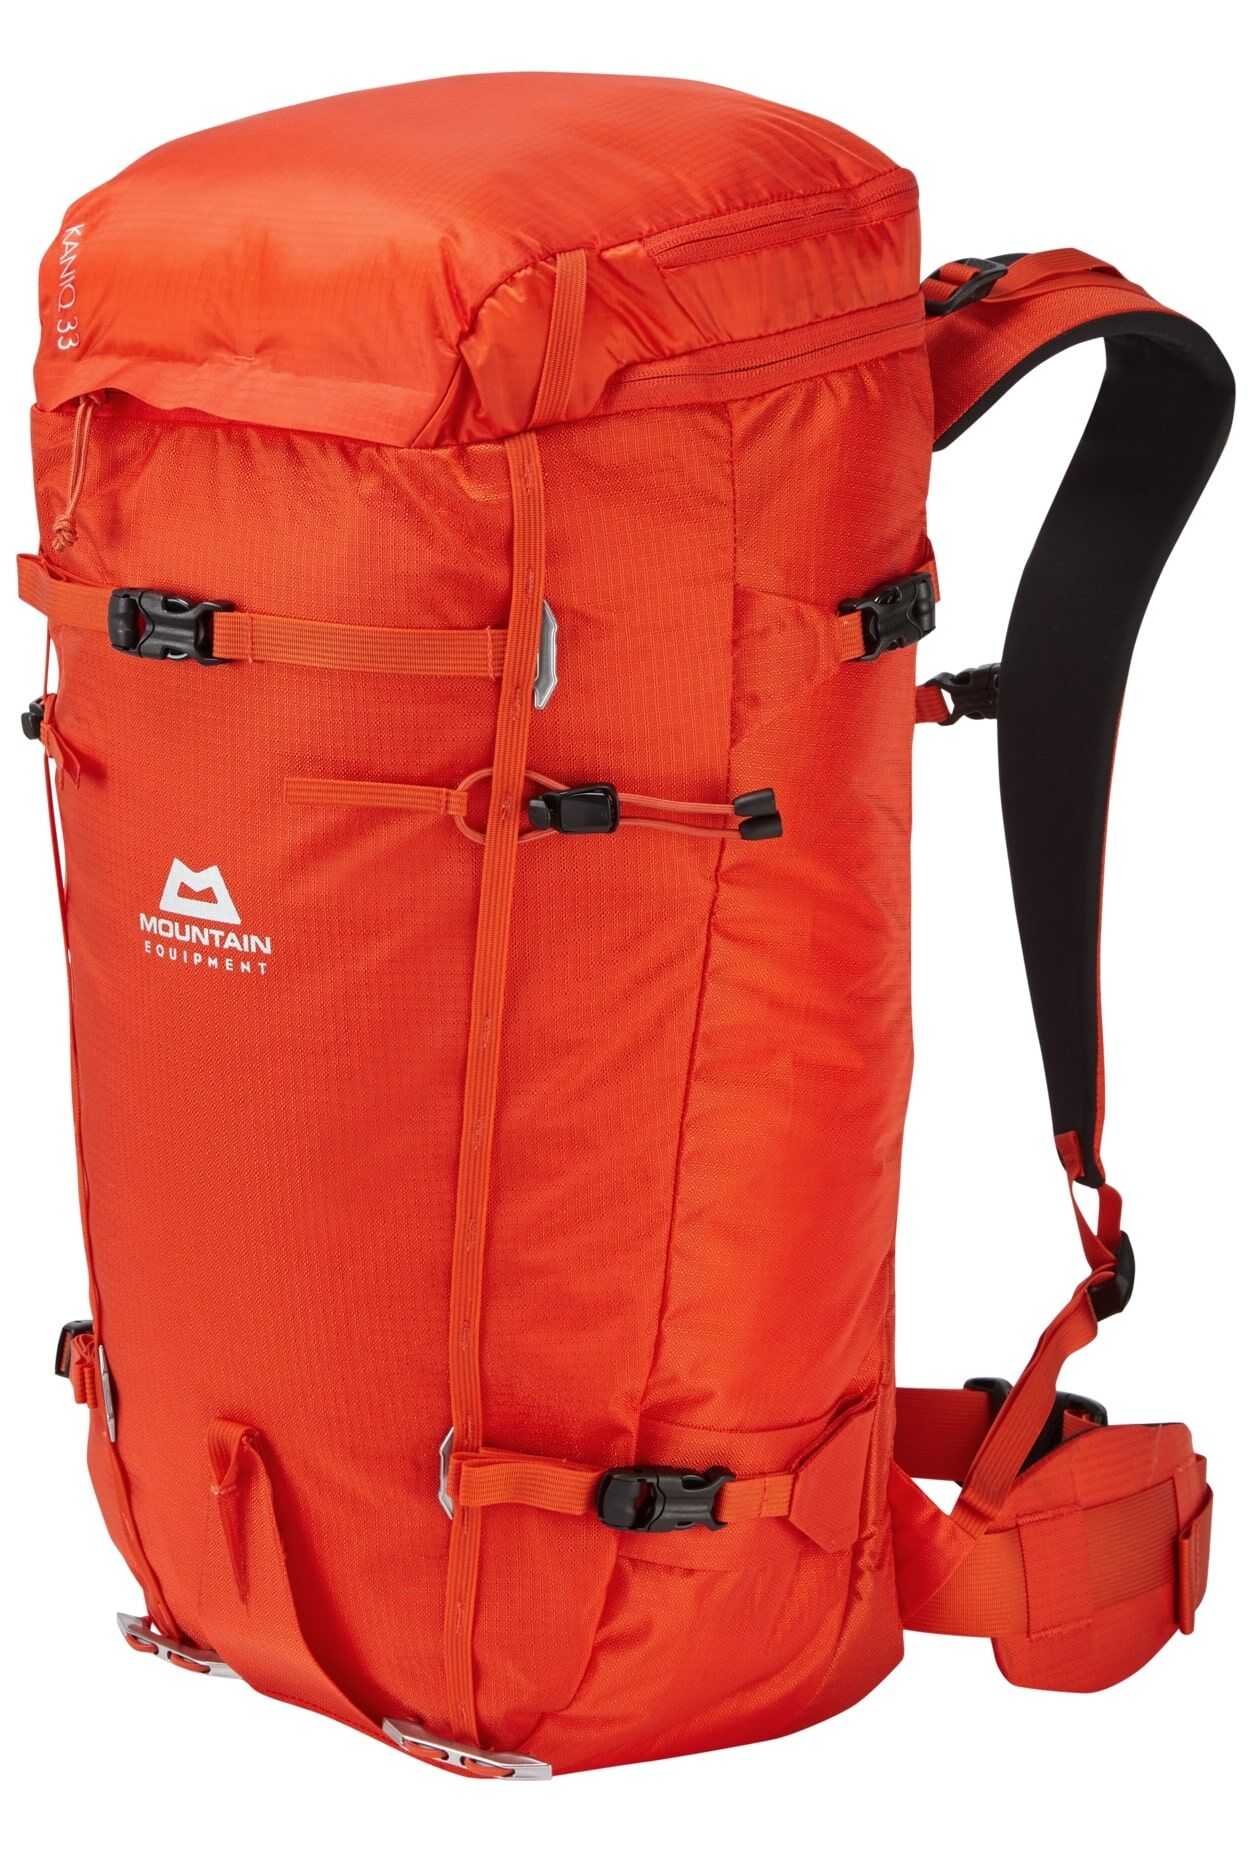 Mountain Equipment Kaniq 33 - Ski touring backpack